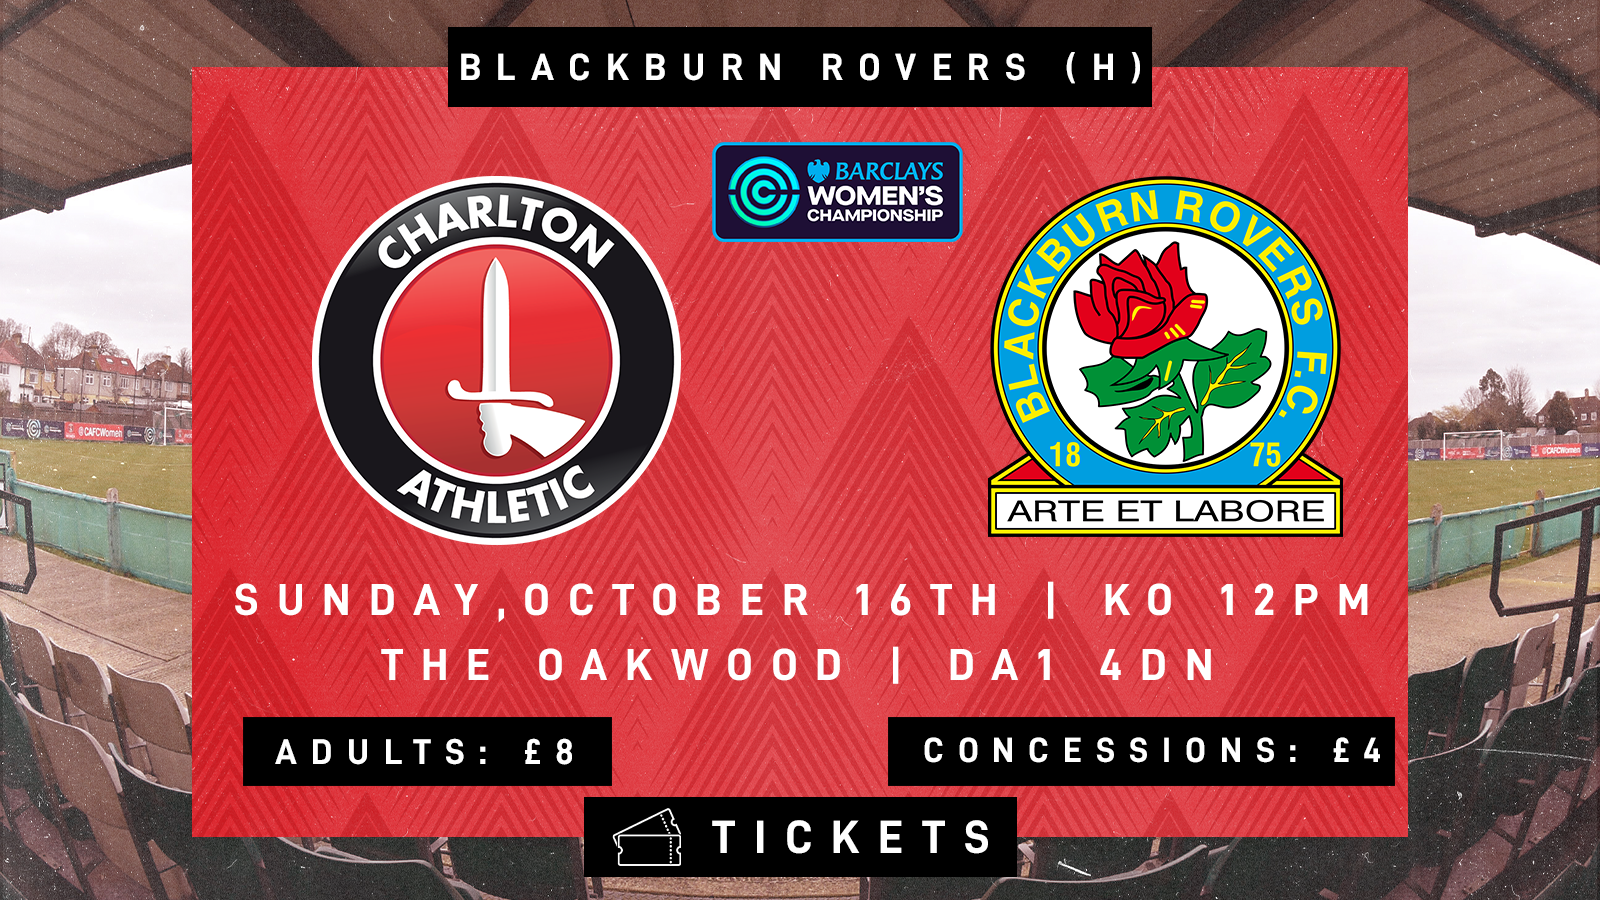 Charlton v Blackburn Rovers graphic 